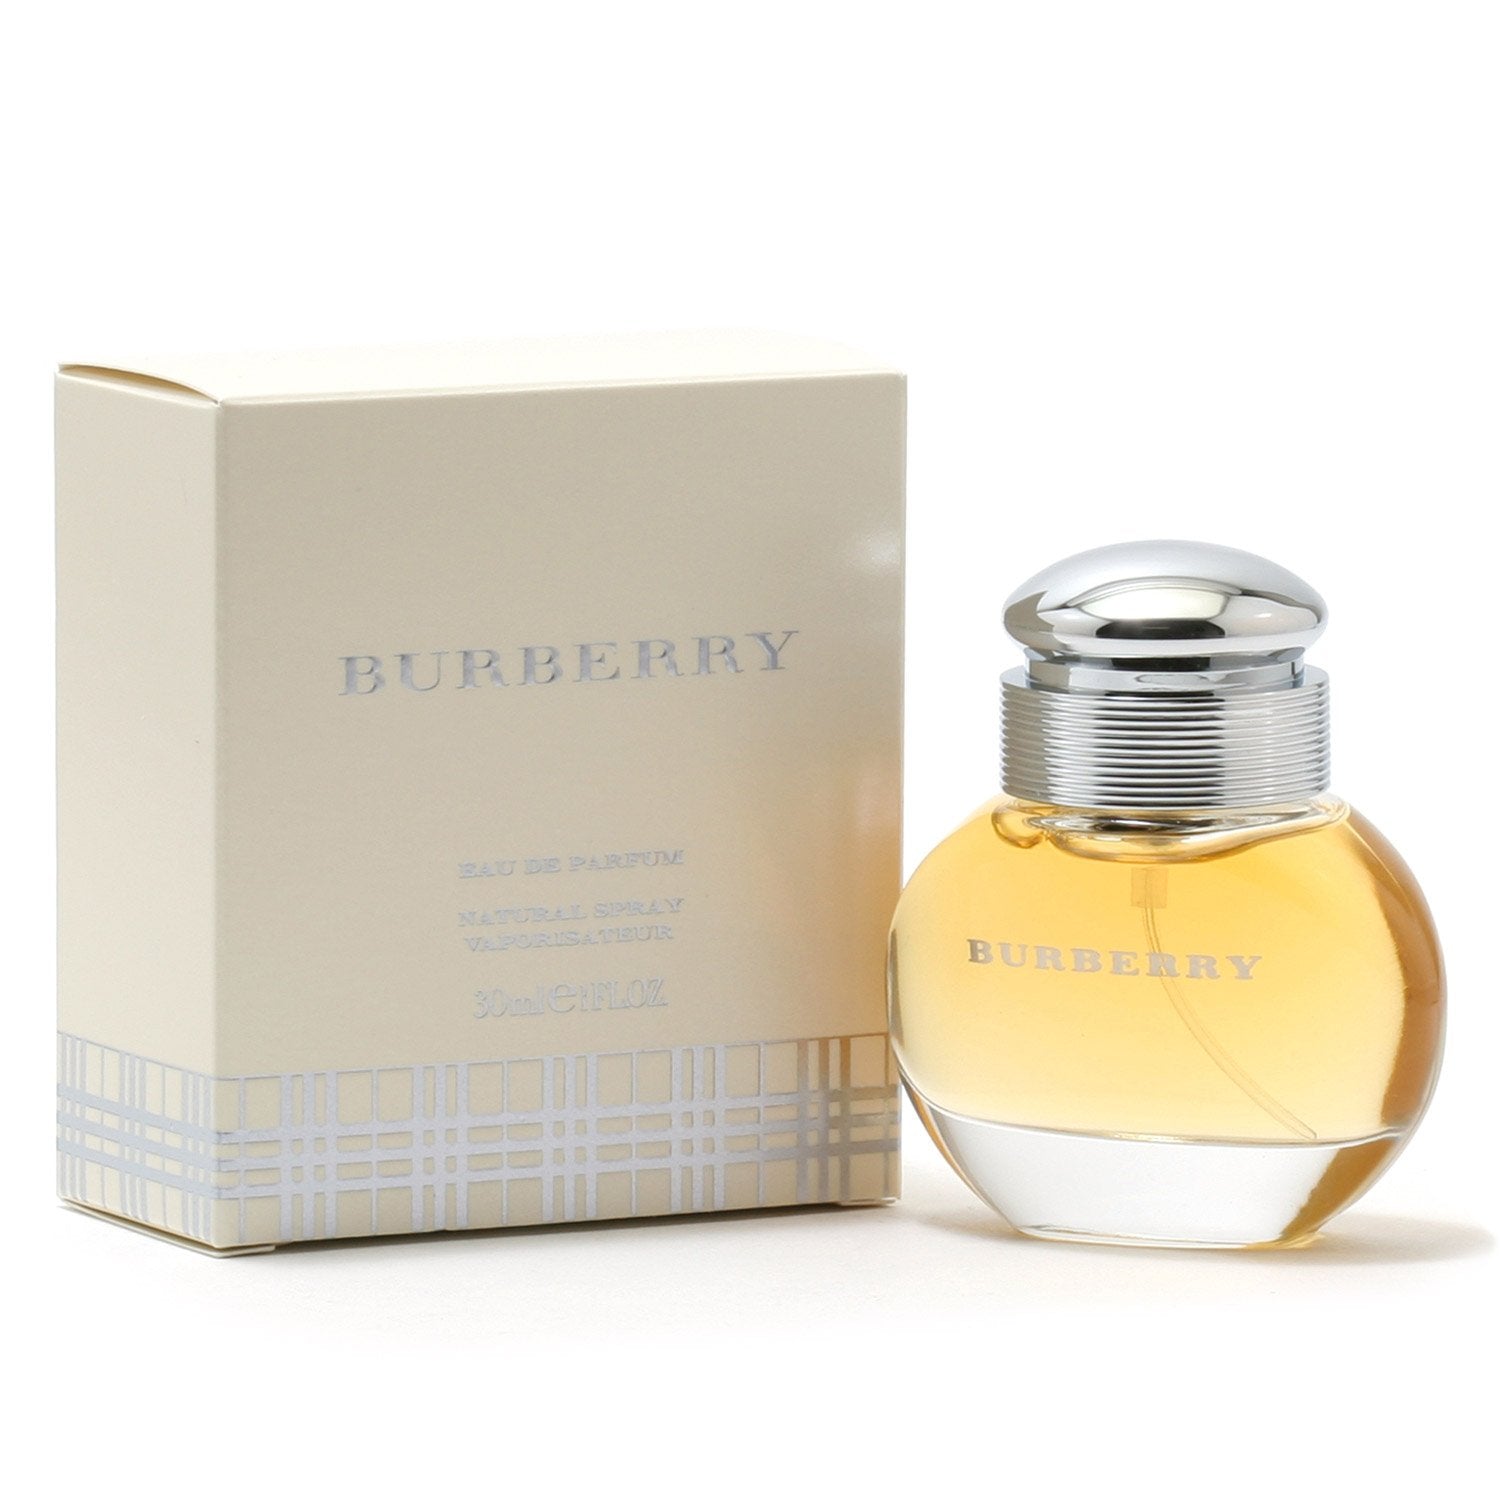 SPRAY – DE BURBERRY FOR Fragrance CLASSIC EAU PARFUM Room - WOMEN